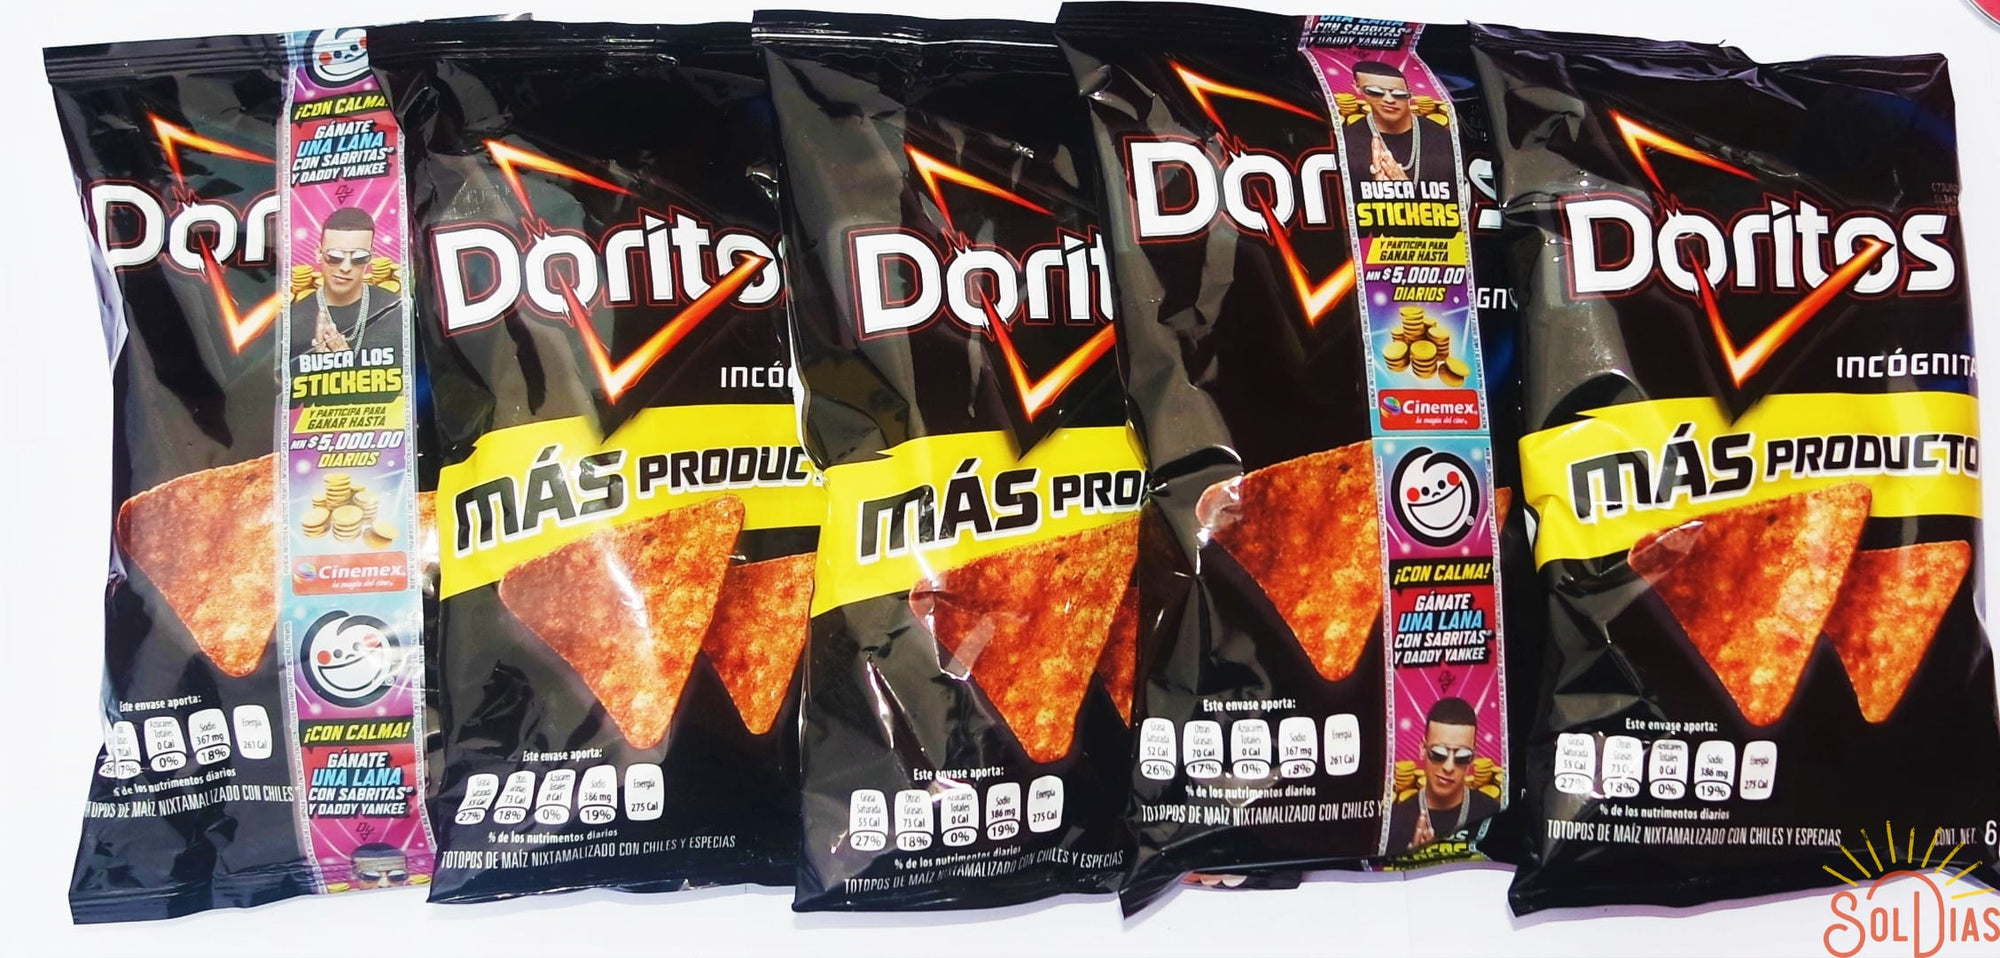 Doritos Incognita 61g | Spicy Mexican Chips | Sabritas Mexicanas - Sol Dias